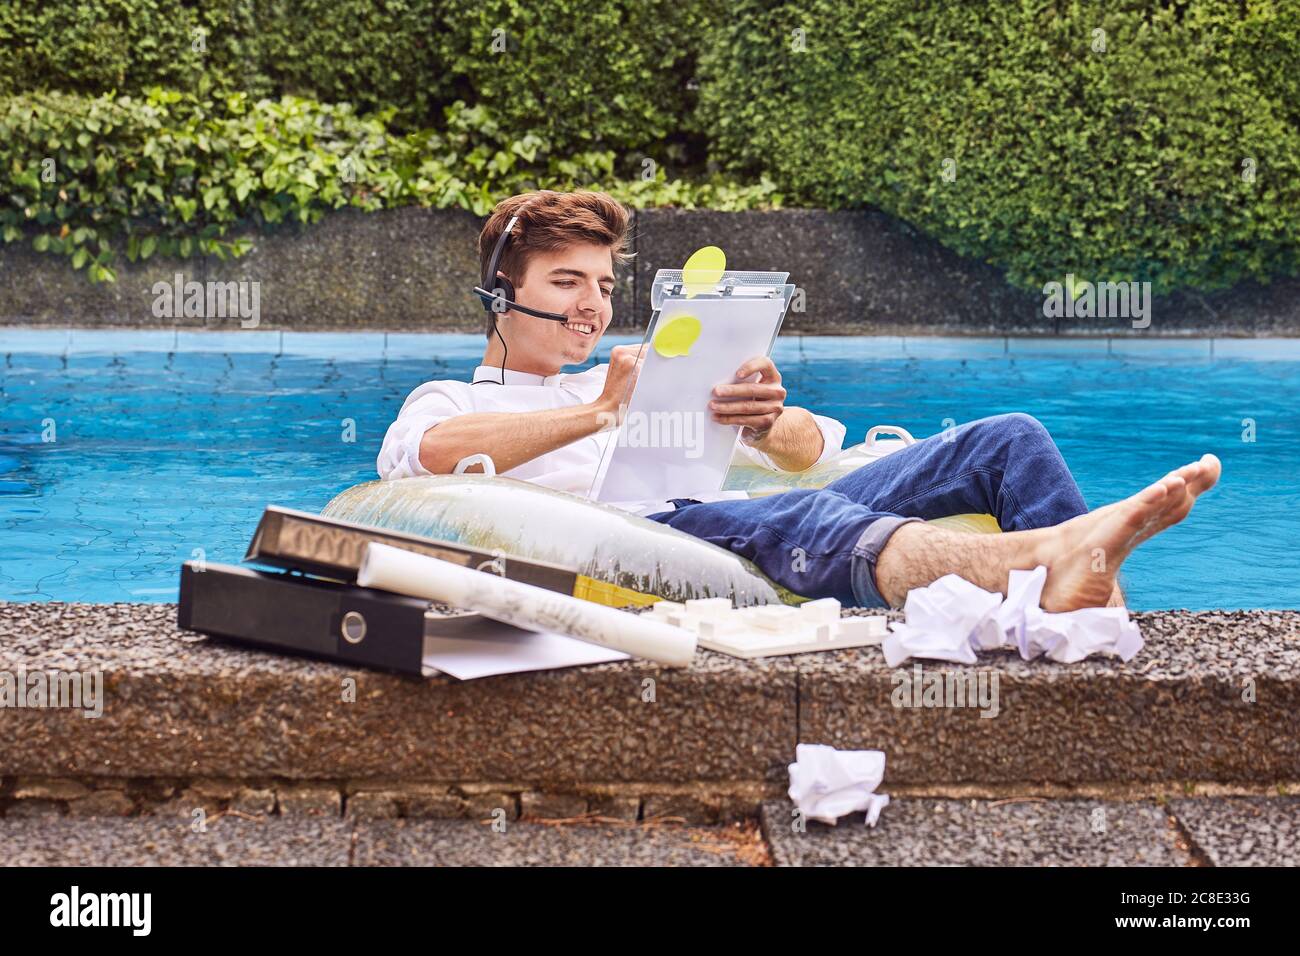 Jeune homme assis sur un matelas pneumatique dans la piscine et travaillant Banque D'Images